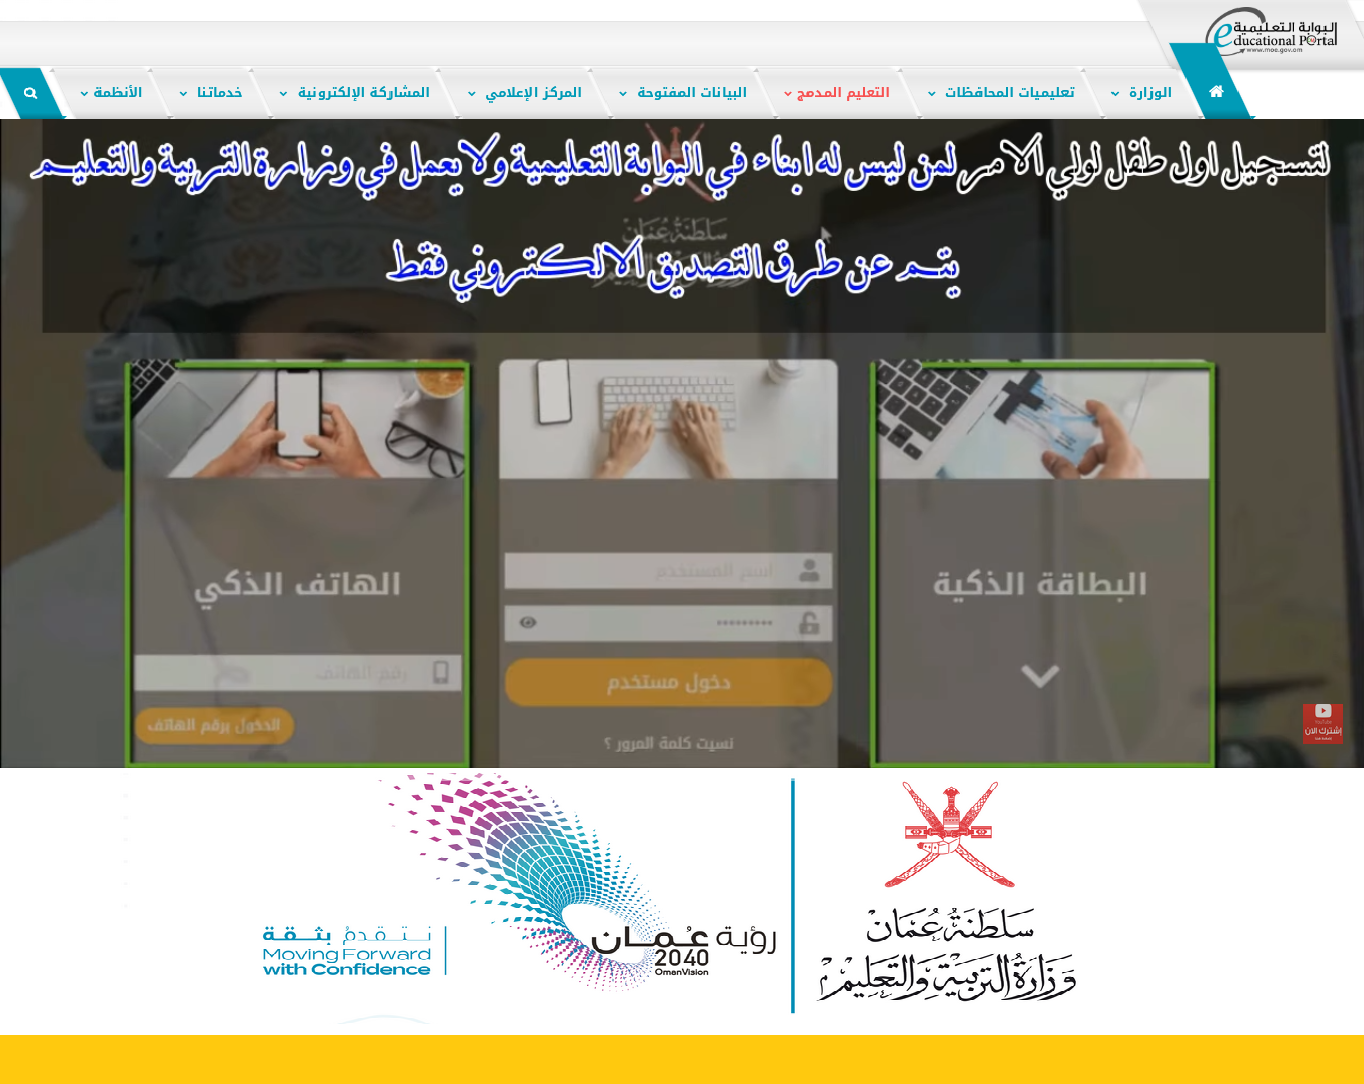 eportal.moe.gov.om المنصة التعليمية في سلطنة عمان بوابة تسجيل ولي أمر طالب جديد (صف أول – روضة – نتائج الطلاب)